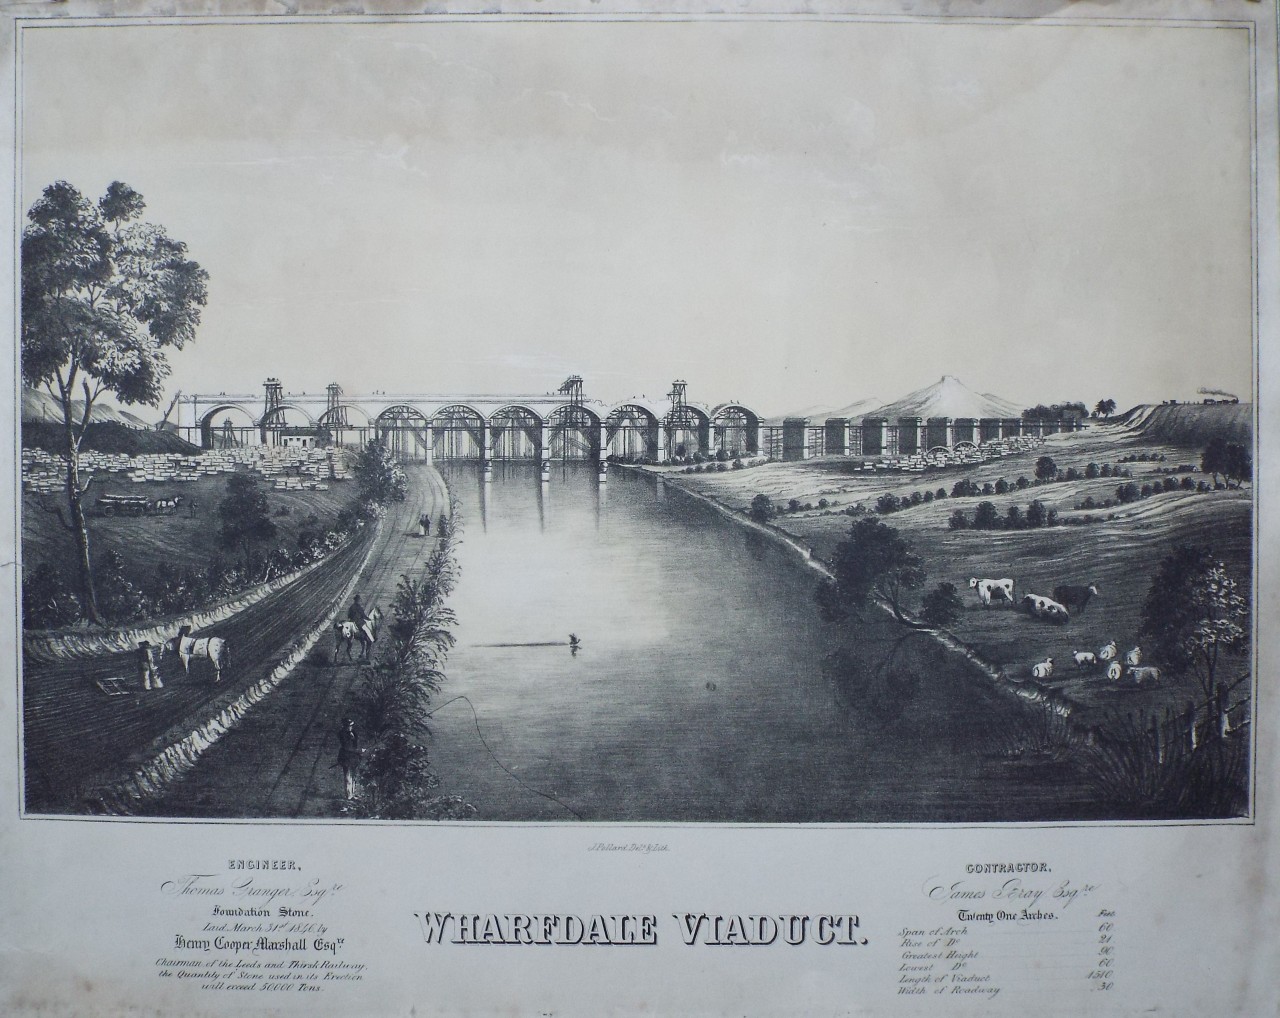 Lithograph - Wharfdale Viaduct. - Pollard